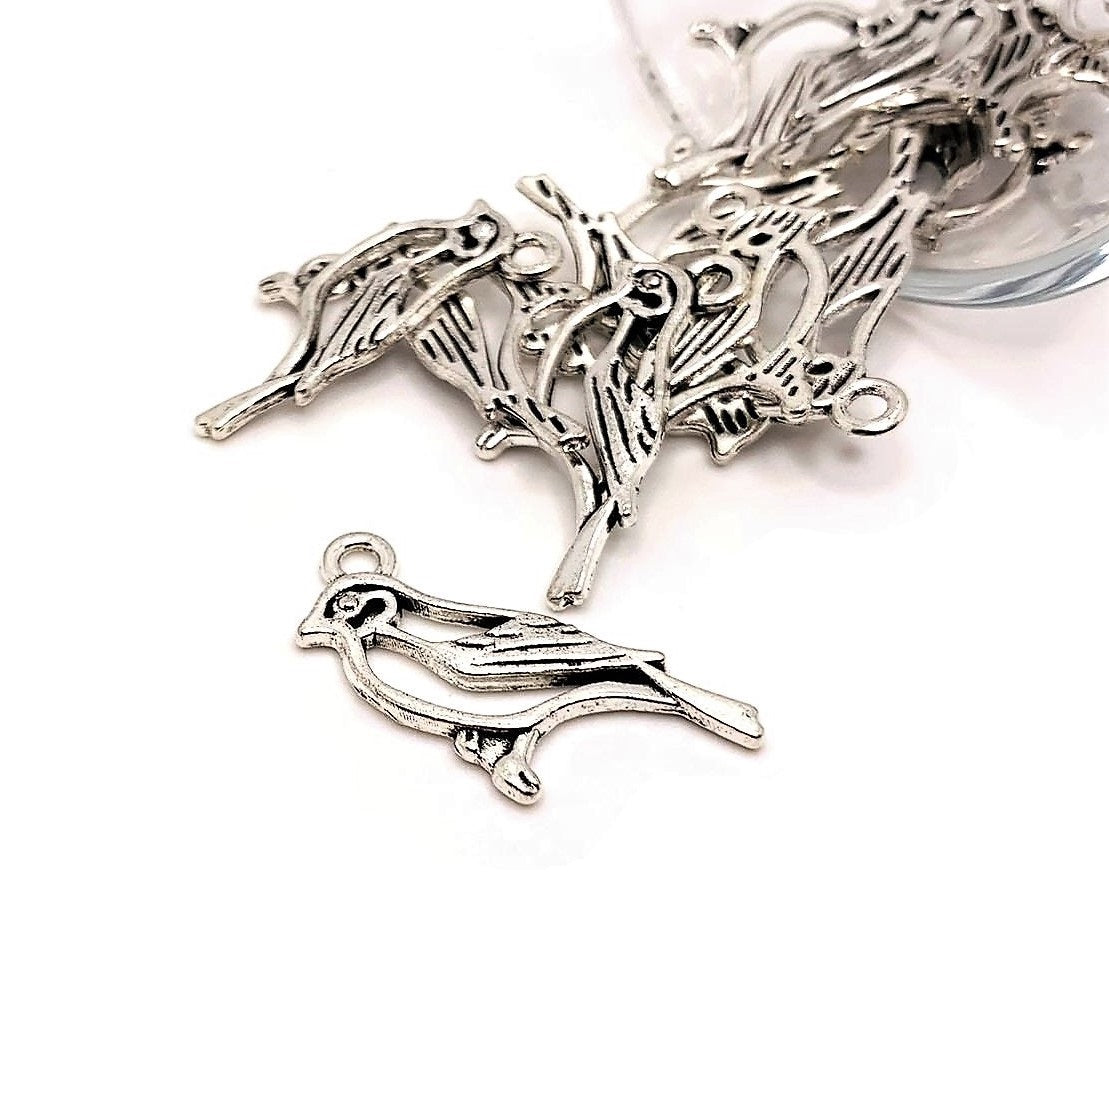 4, 20 or 50 Pieces: Silver Robin Bird Charms